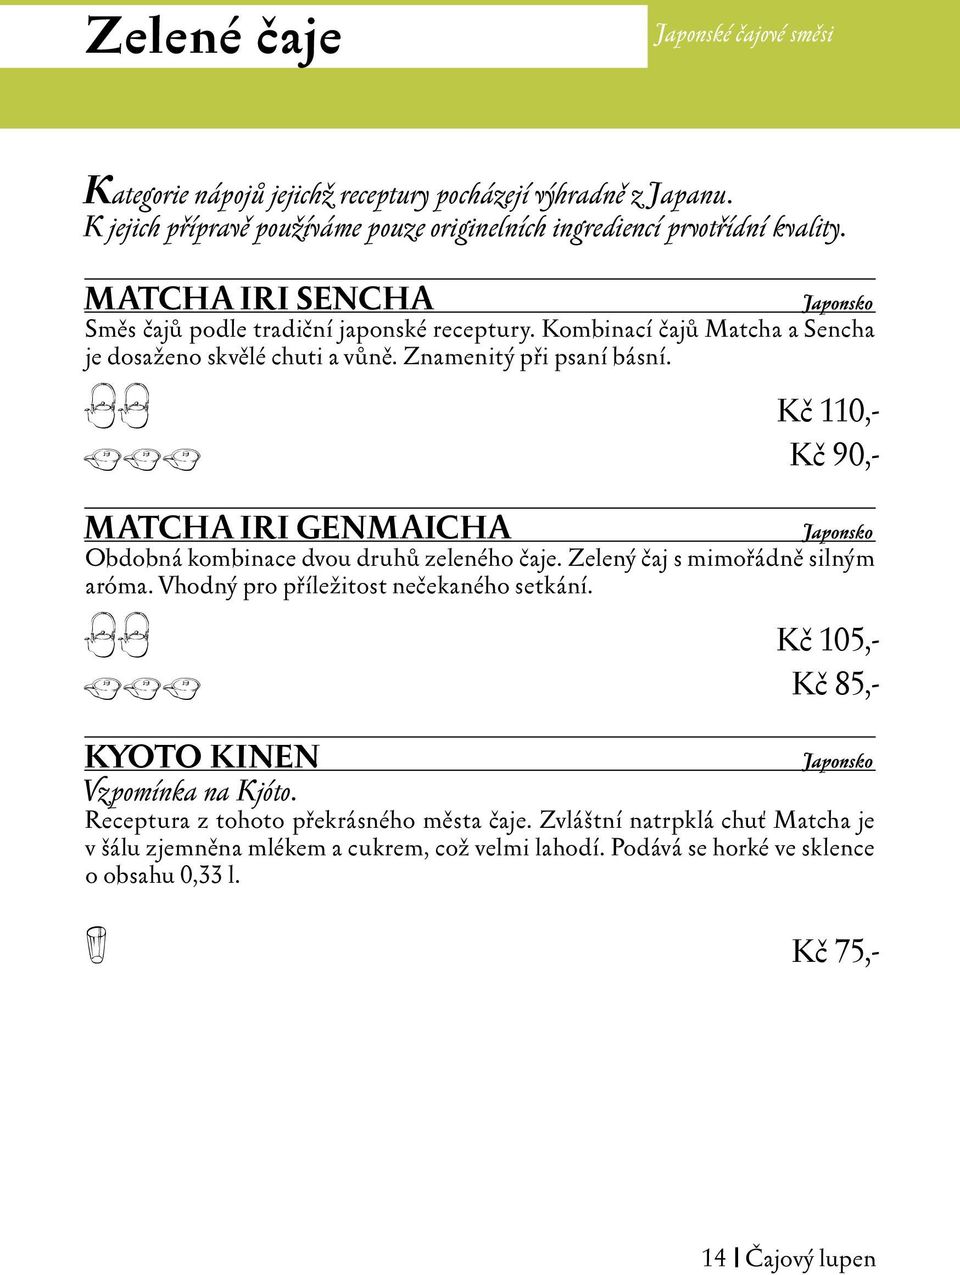 aa Kč 110,- bbb Kč 90,- MATCHA IRI GENMAICHA Japonsko Obdobná kombinace dvou druhů zeleného čaje. Zelený čaj s mimořádně silným aróma. Vhodný pro příležitost nečekaného setkání.